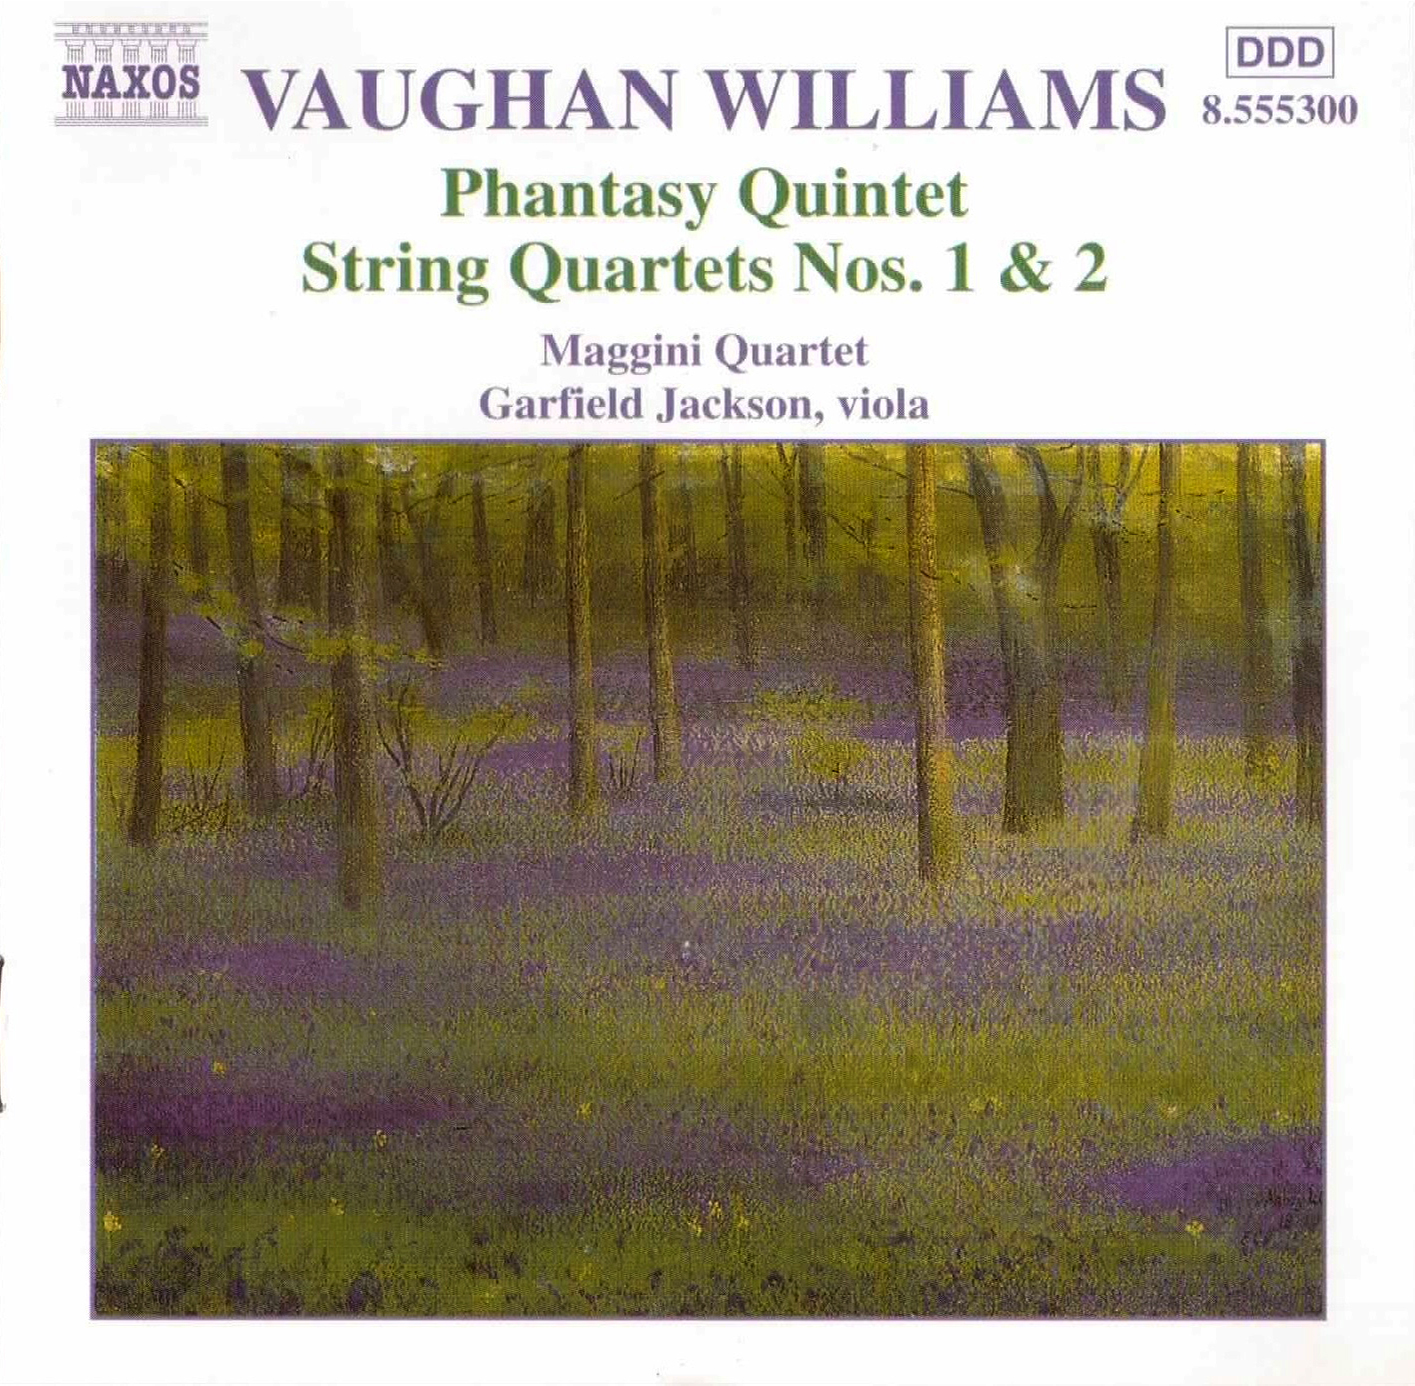 Vaughan Williams - Phantasy Quintet, String Quartets - Maggini Quartet